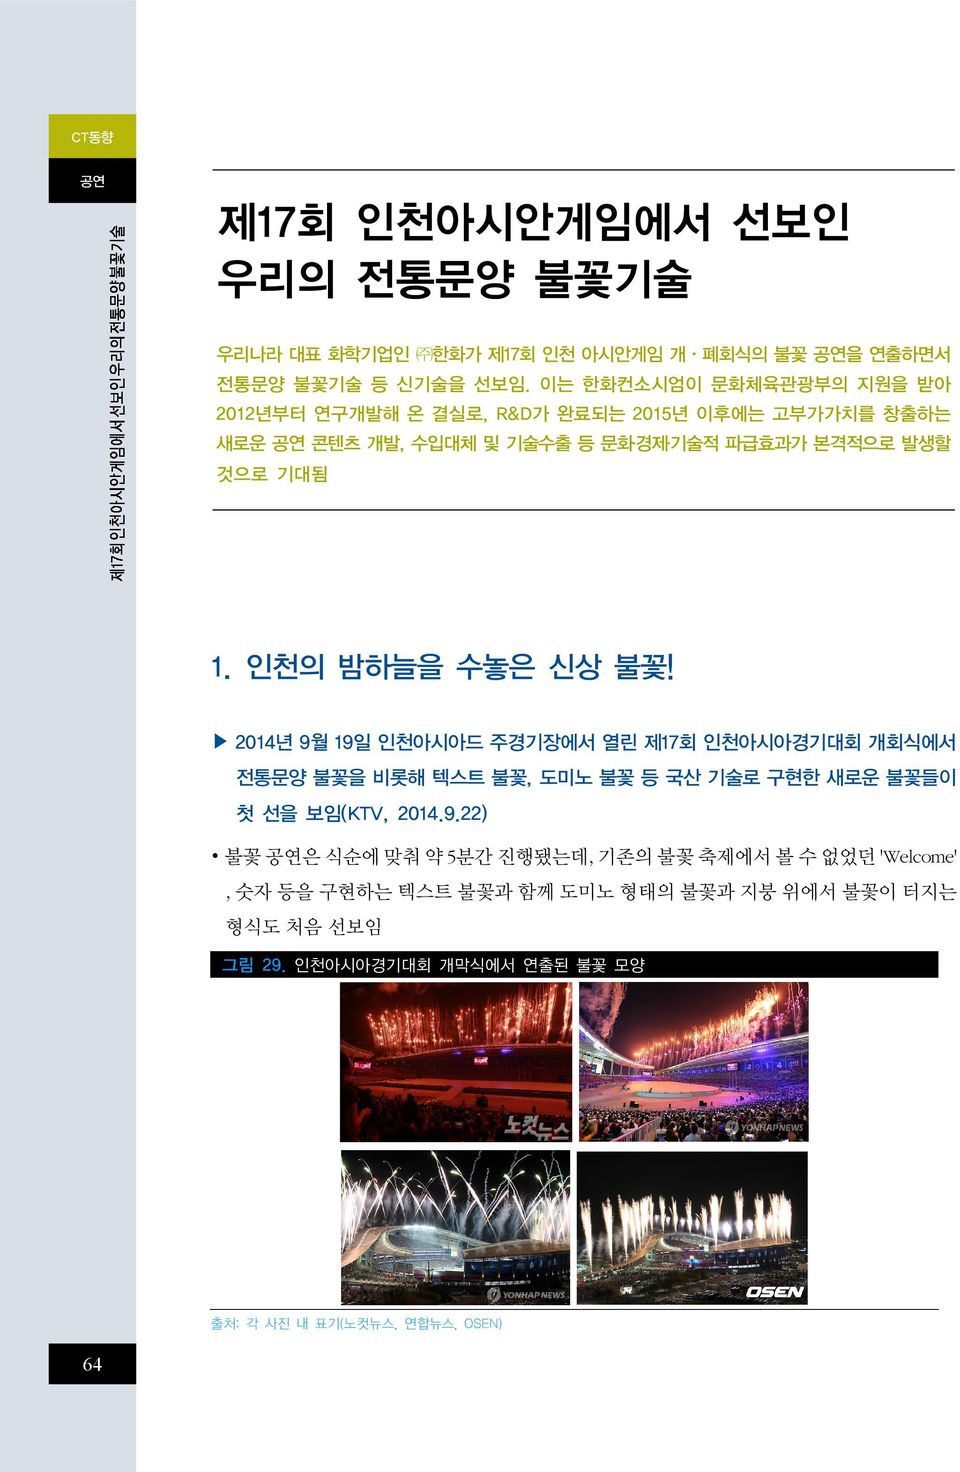 인천의 밤하늘을 수놓은 신상 불꽃! 2014년 9월